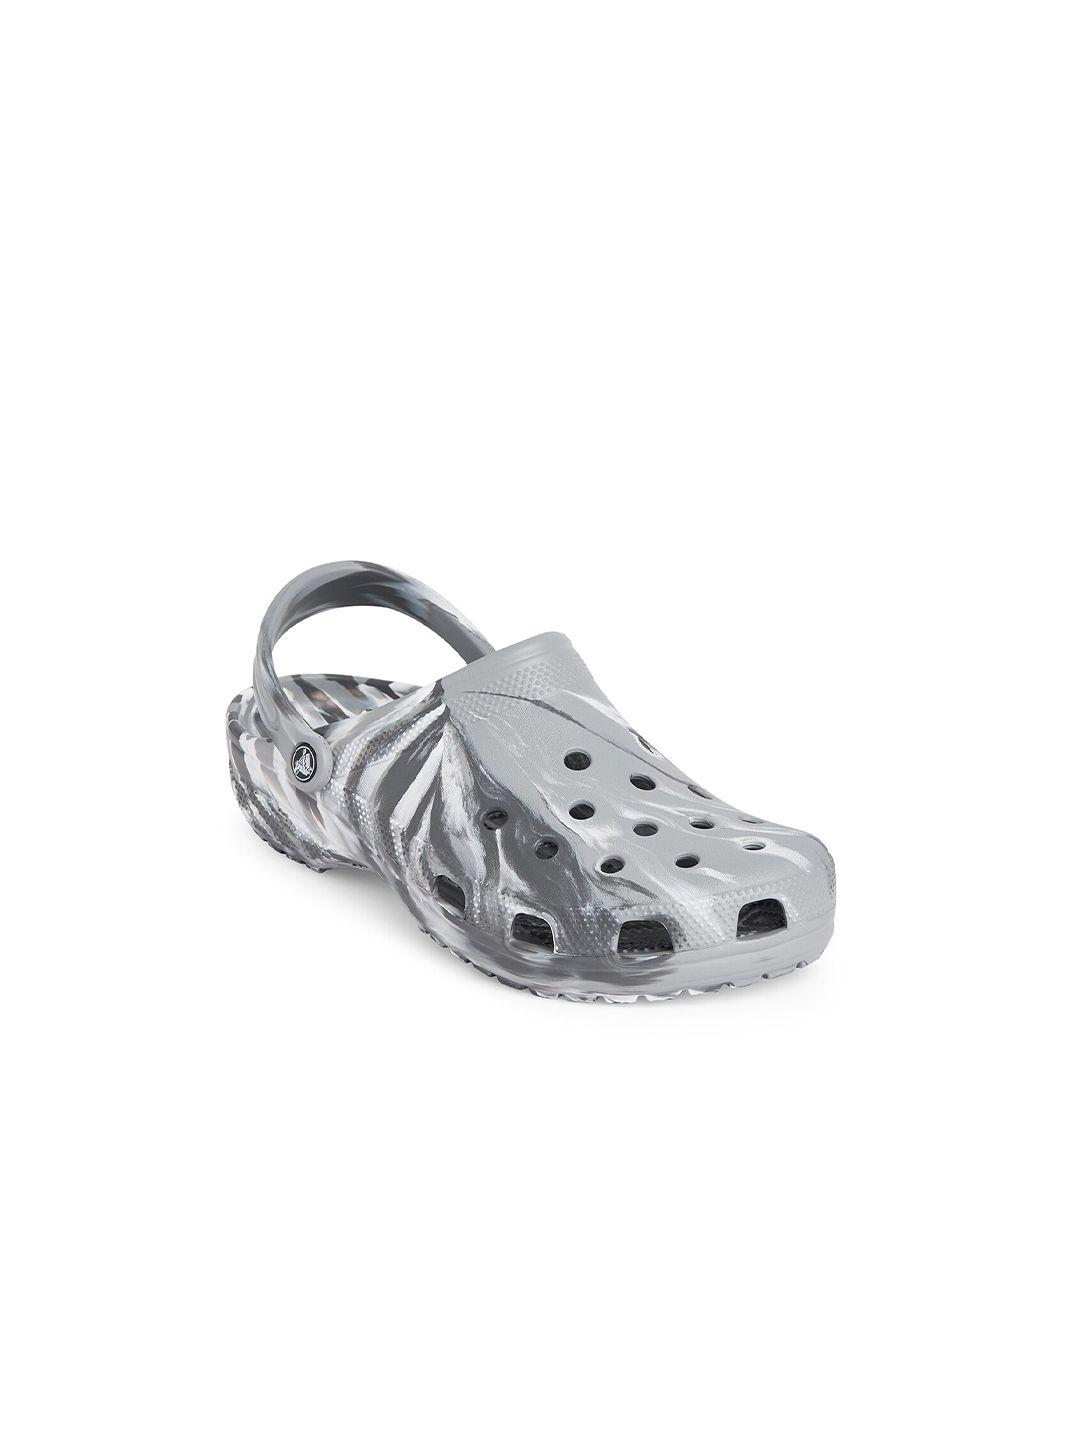 crocs grey embellished croslite clogs